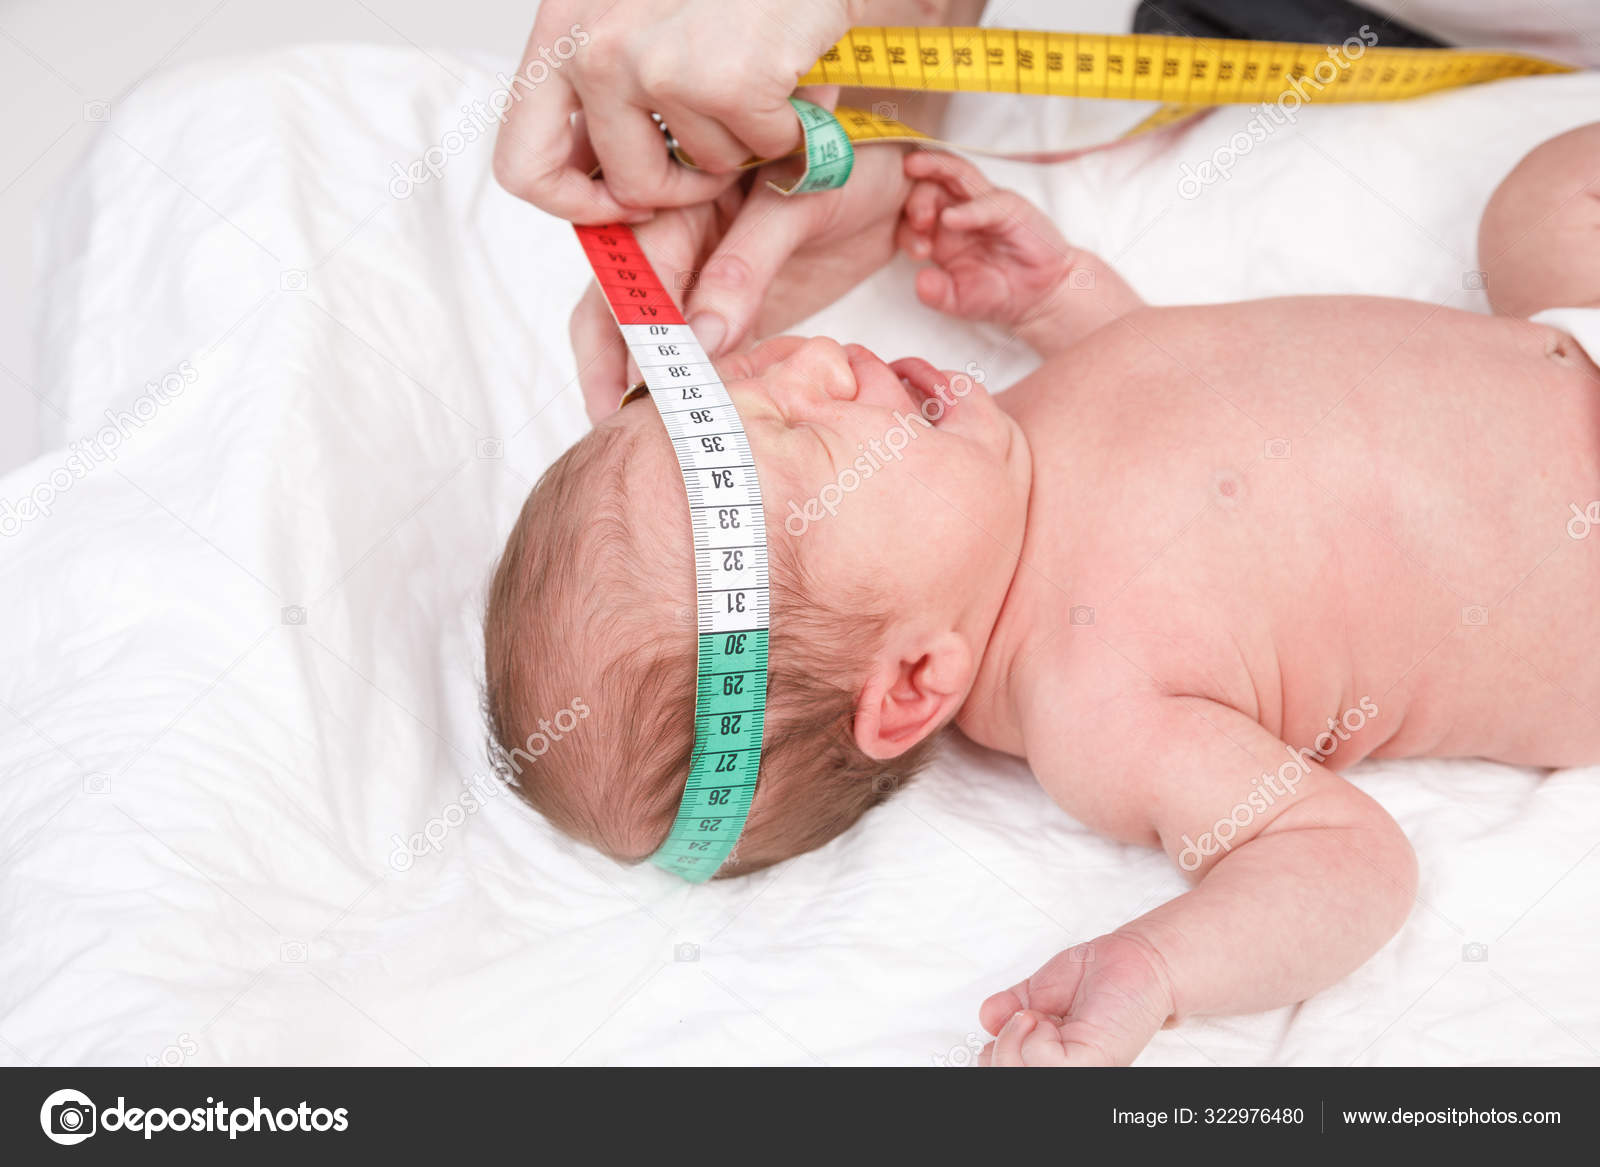 https://st3.depositphotos.com/1796022/32297/i/1600/depositphotos_322976480-stock-photo-newborn-medical-exam-doctor-checking.jpg